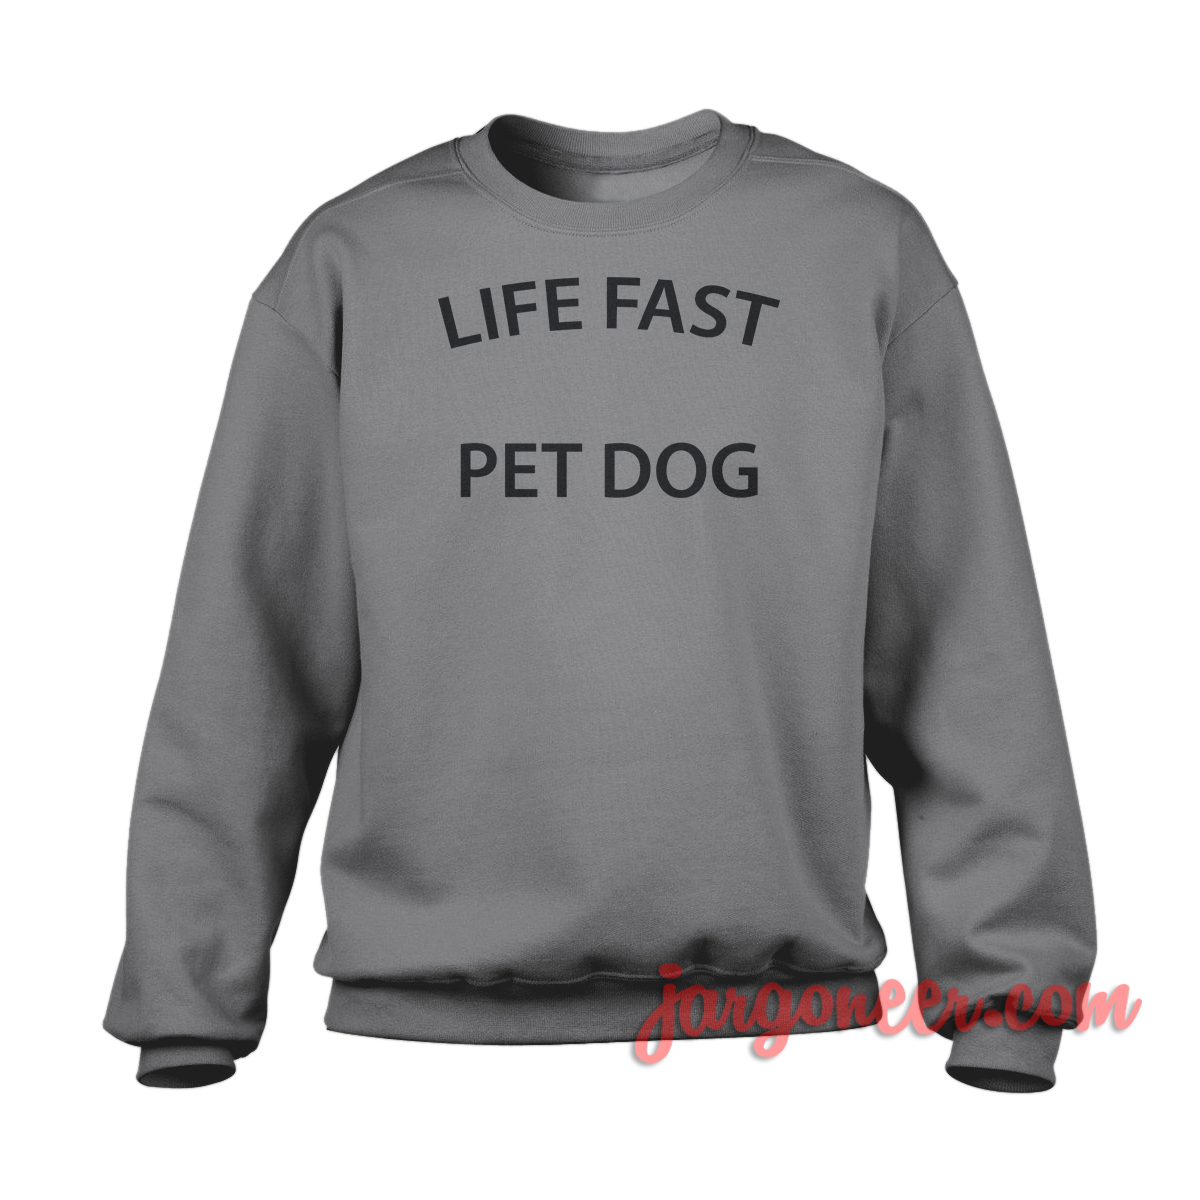 Life Fast Pet Dog 1 - Shop Unique Graphic Cool Shirt Designs